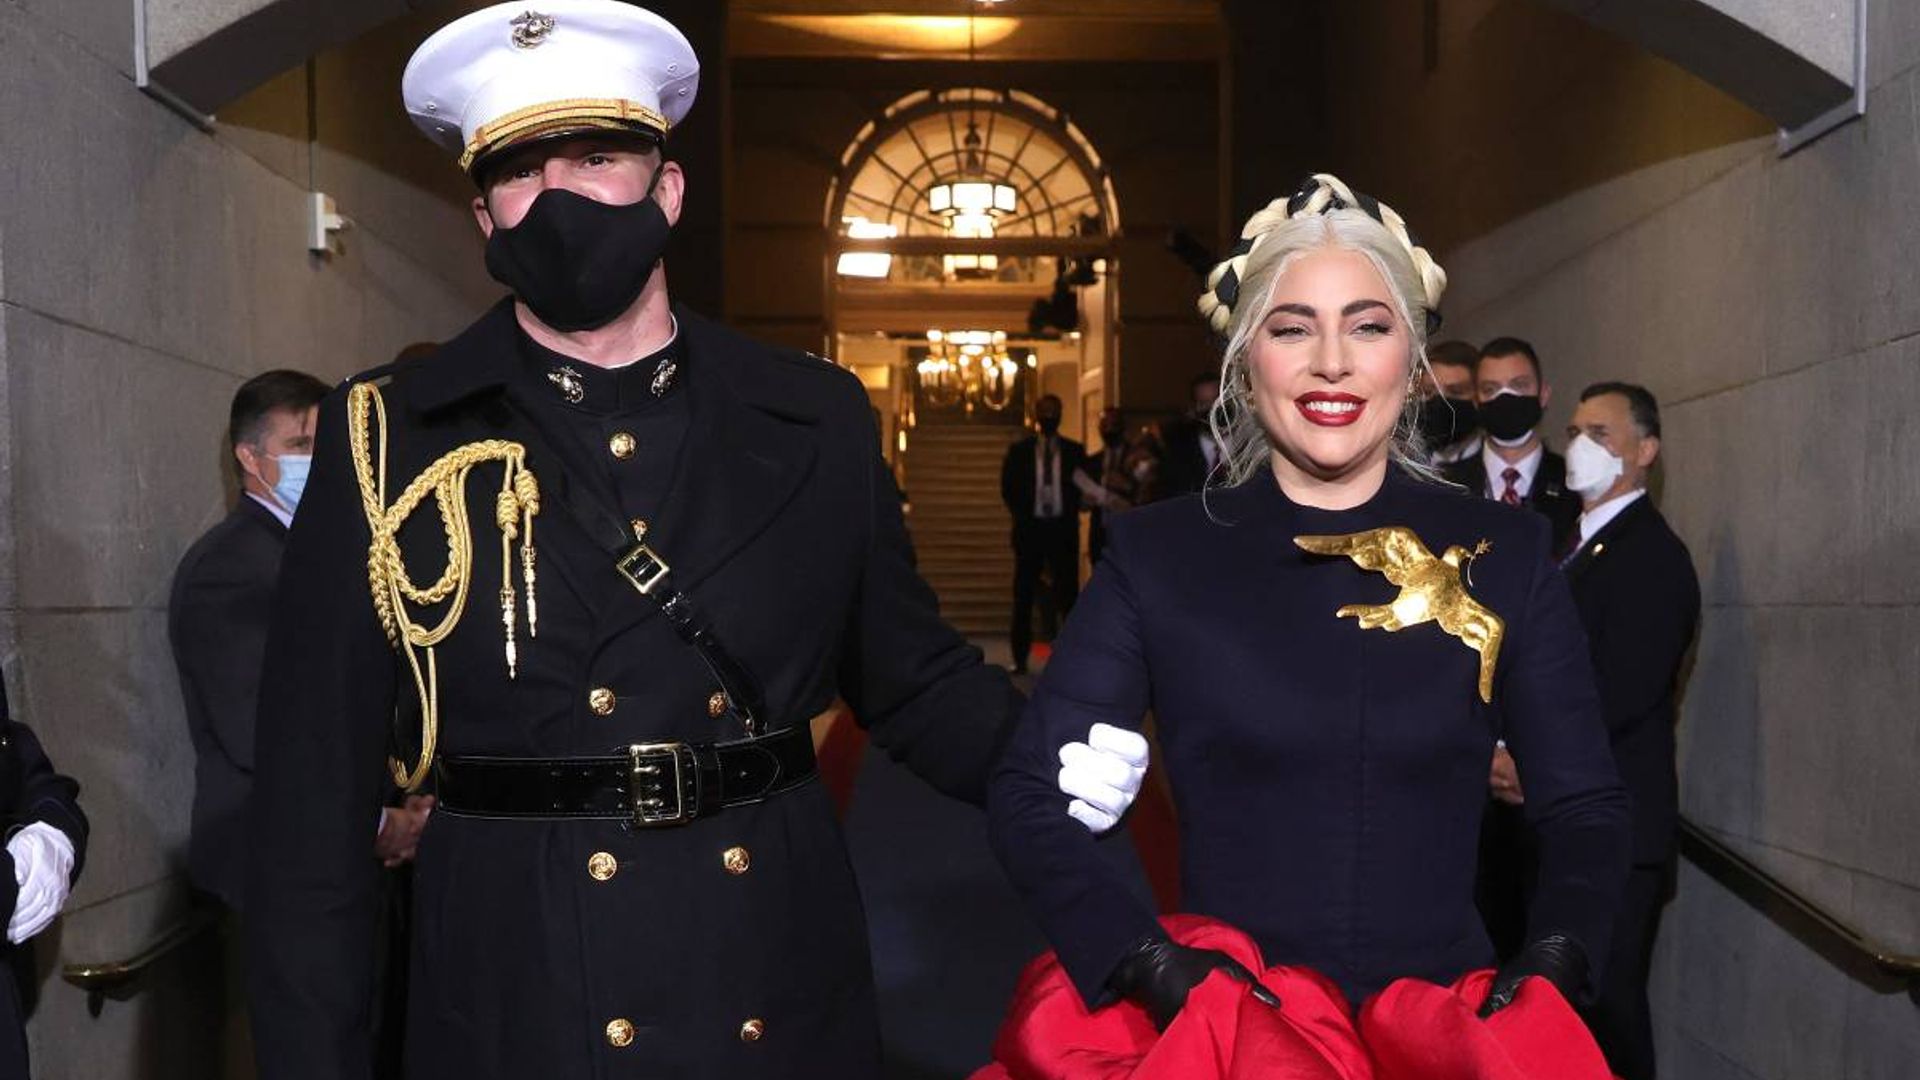 Lady Gaga serves Hunger Games glam at Joe Biden’s inauguration